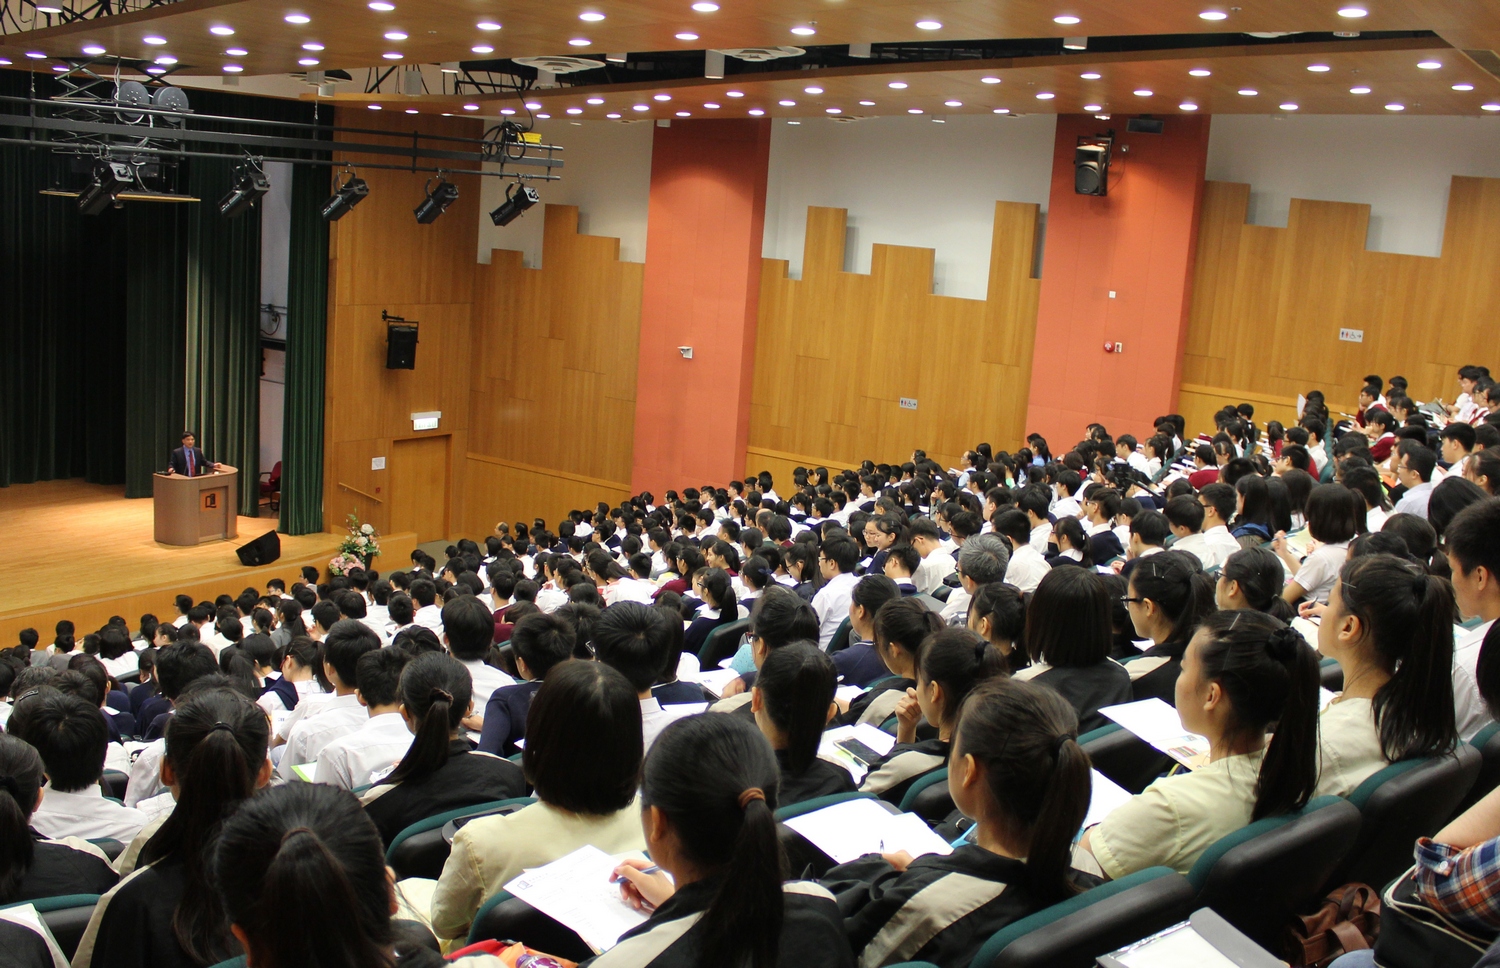 超过630多名国际学院及高中师生参与，全场座无虚席，参加者均非常专注和投入。